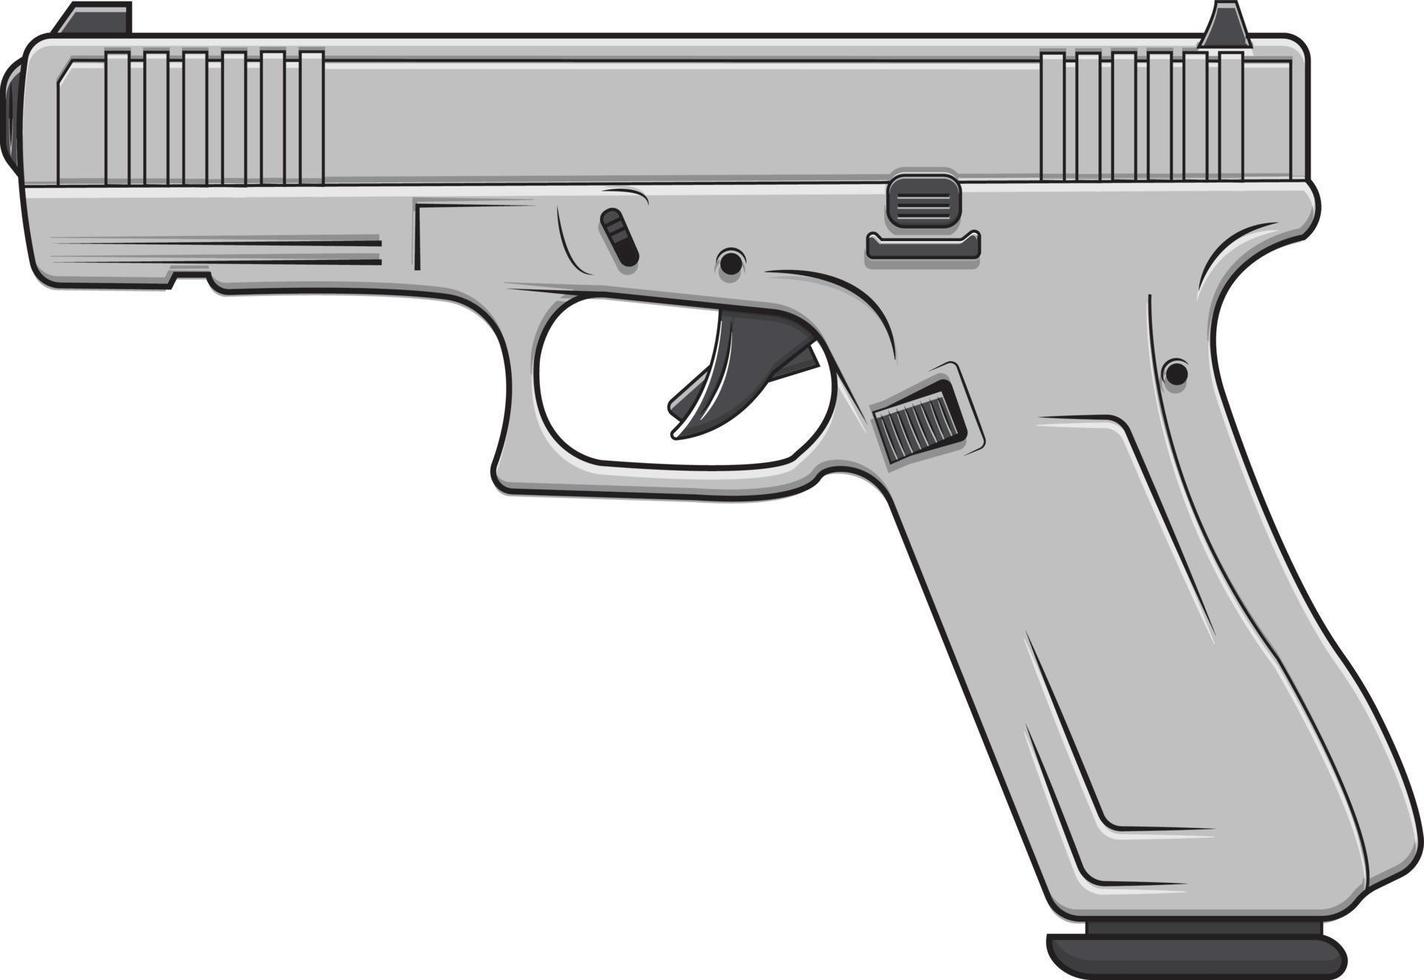 arma militar pistola glock17 vetor